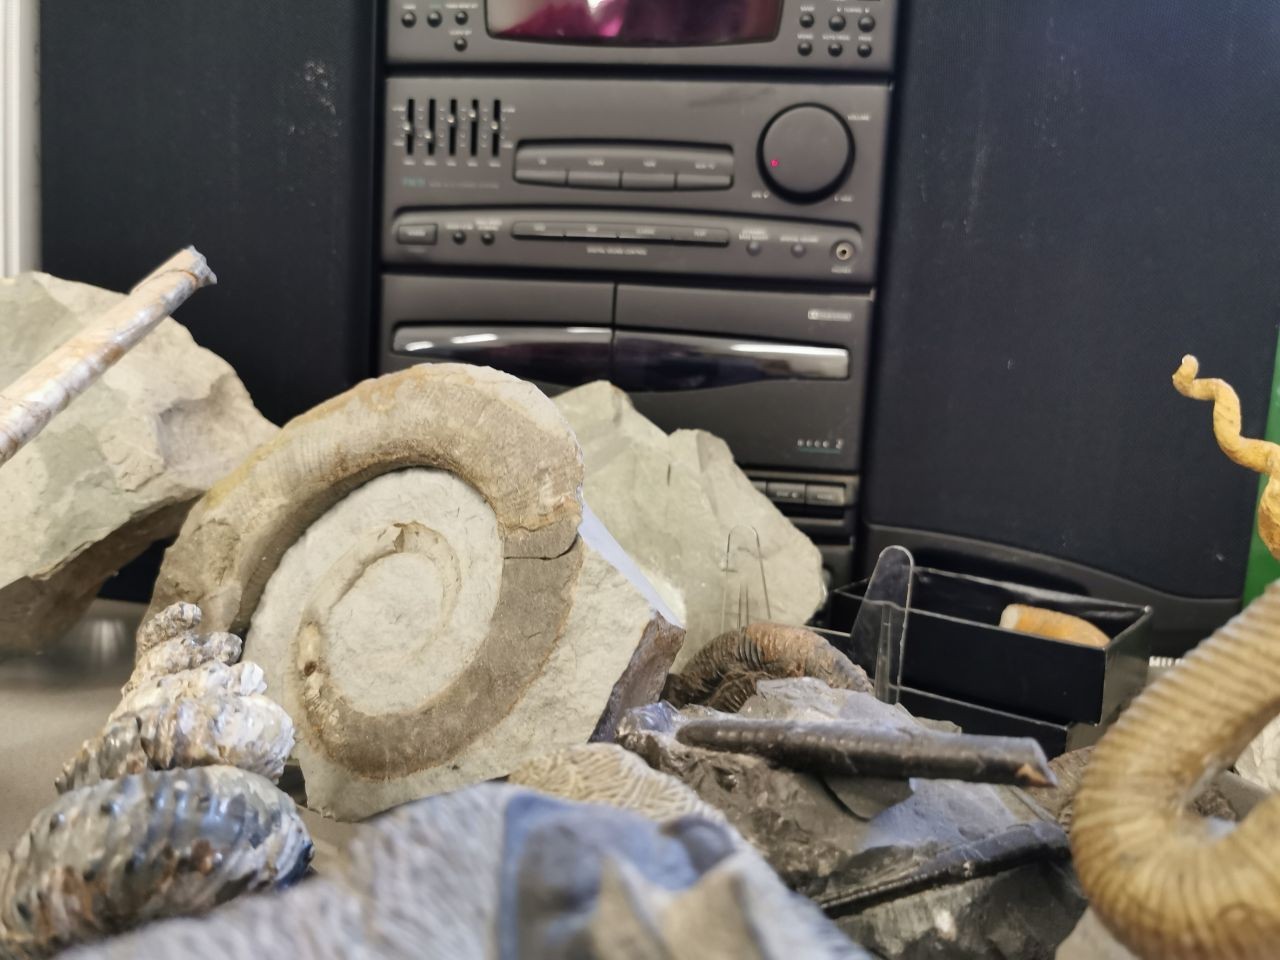 Fossilfinder-Radio-Alexander-Lukeneder